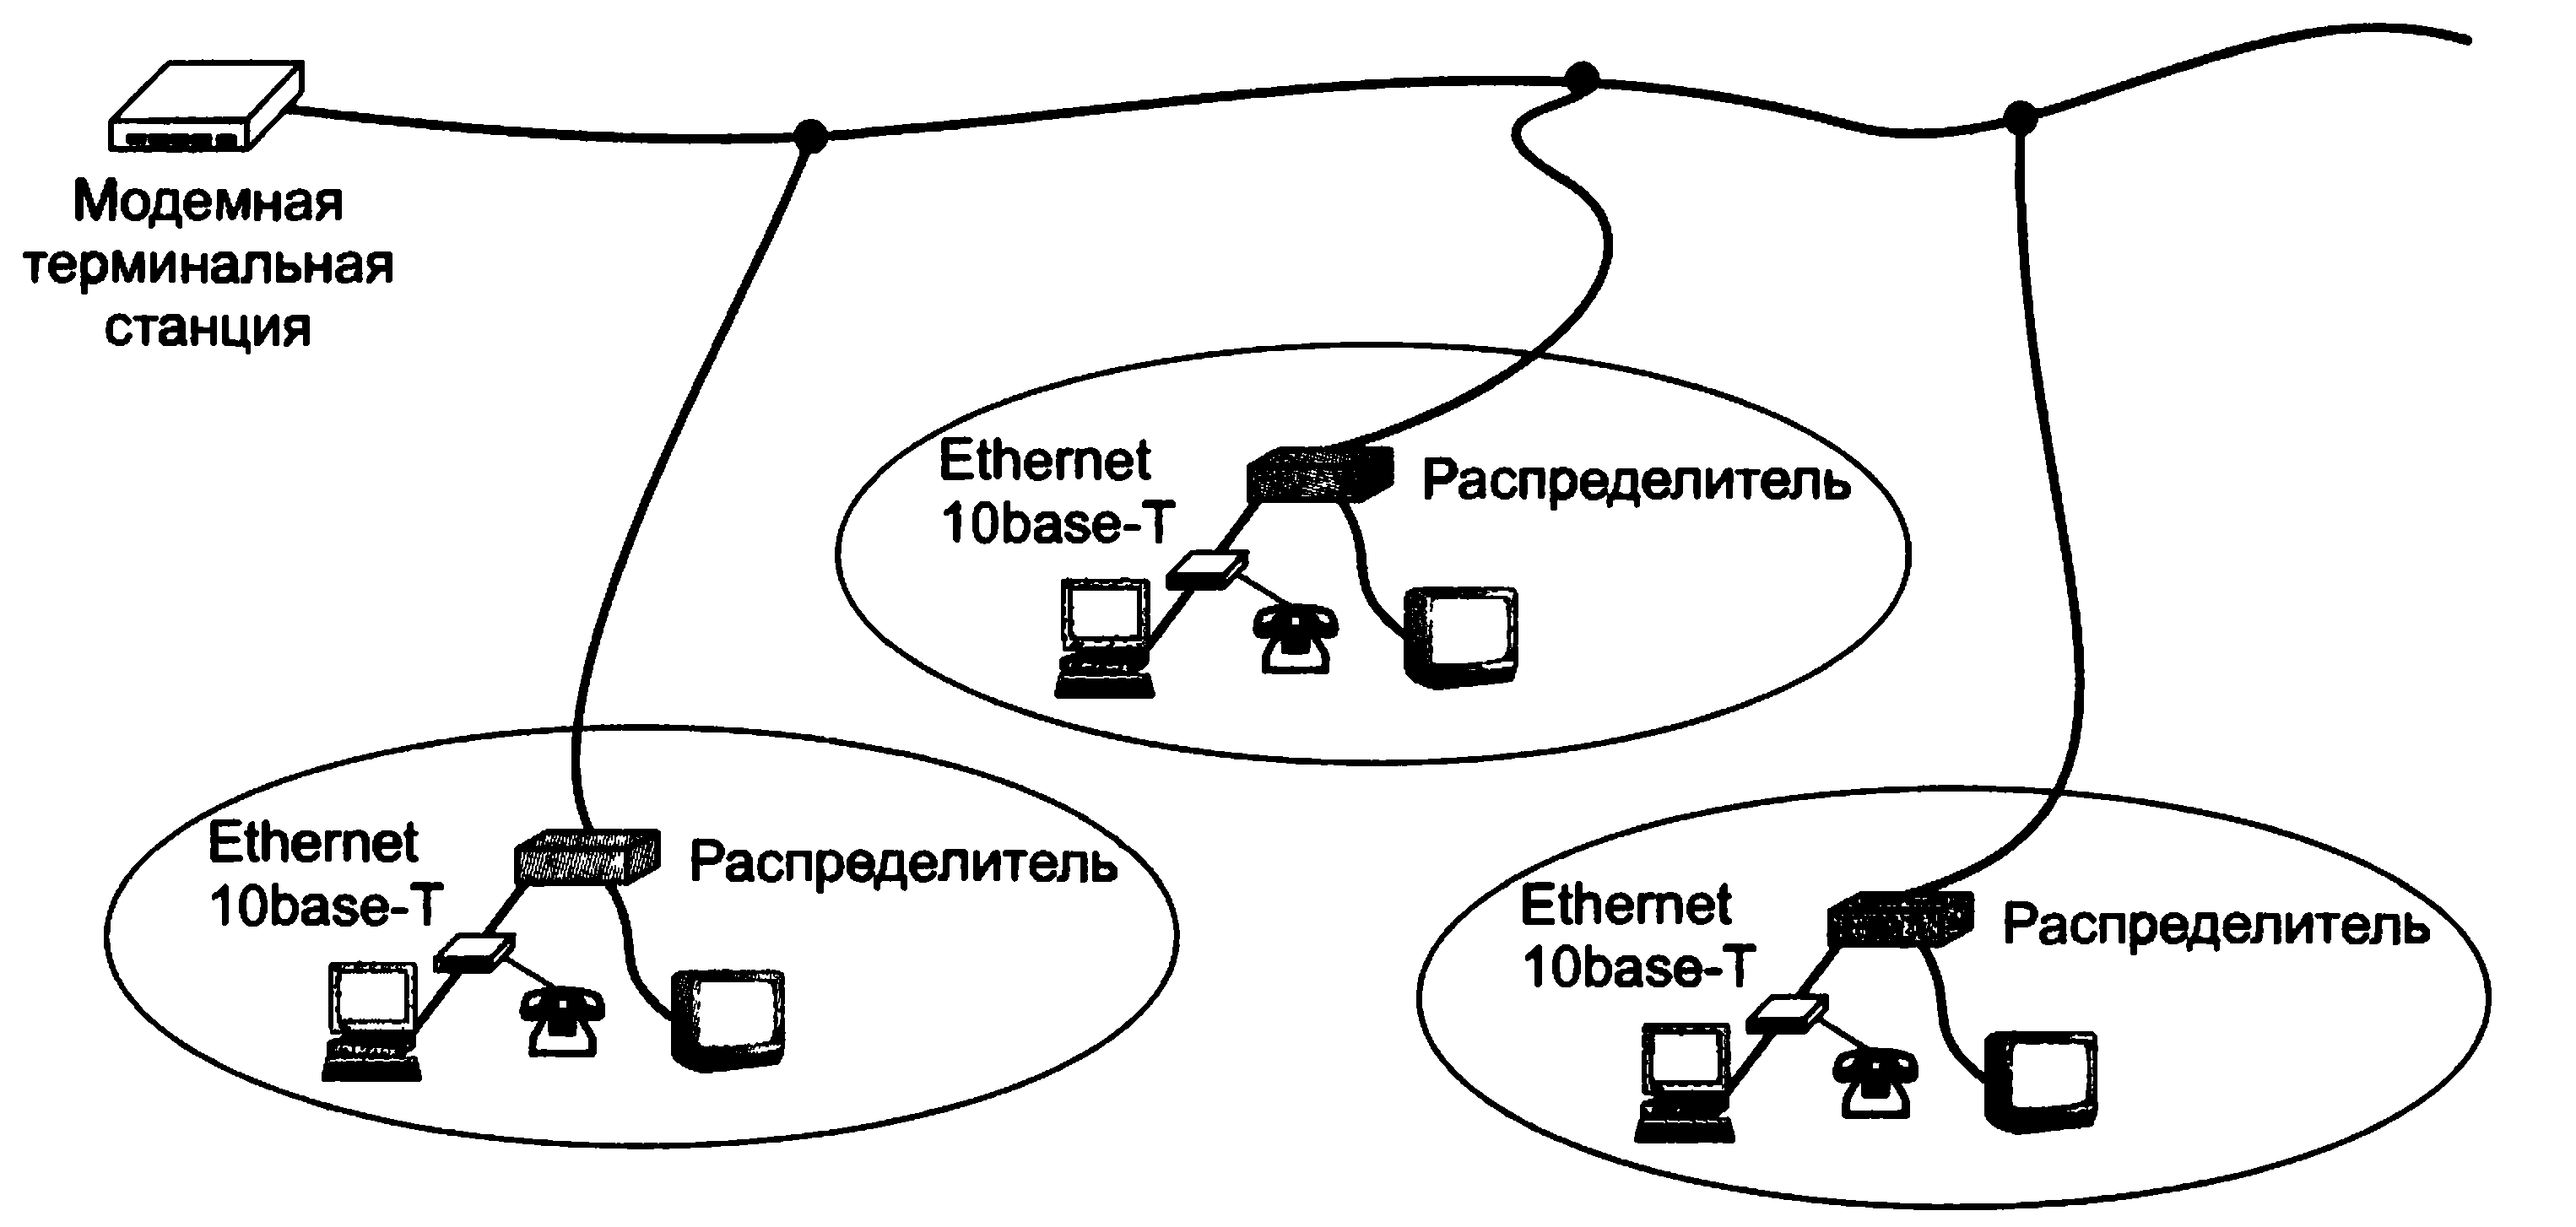 Протокол терминала. Терминальная станция. Удаленный доступ через промежуточную сеть. Оборудование 2 канального уровня. Олифер компьютерные сет.